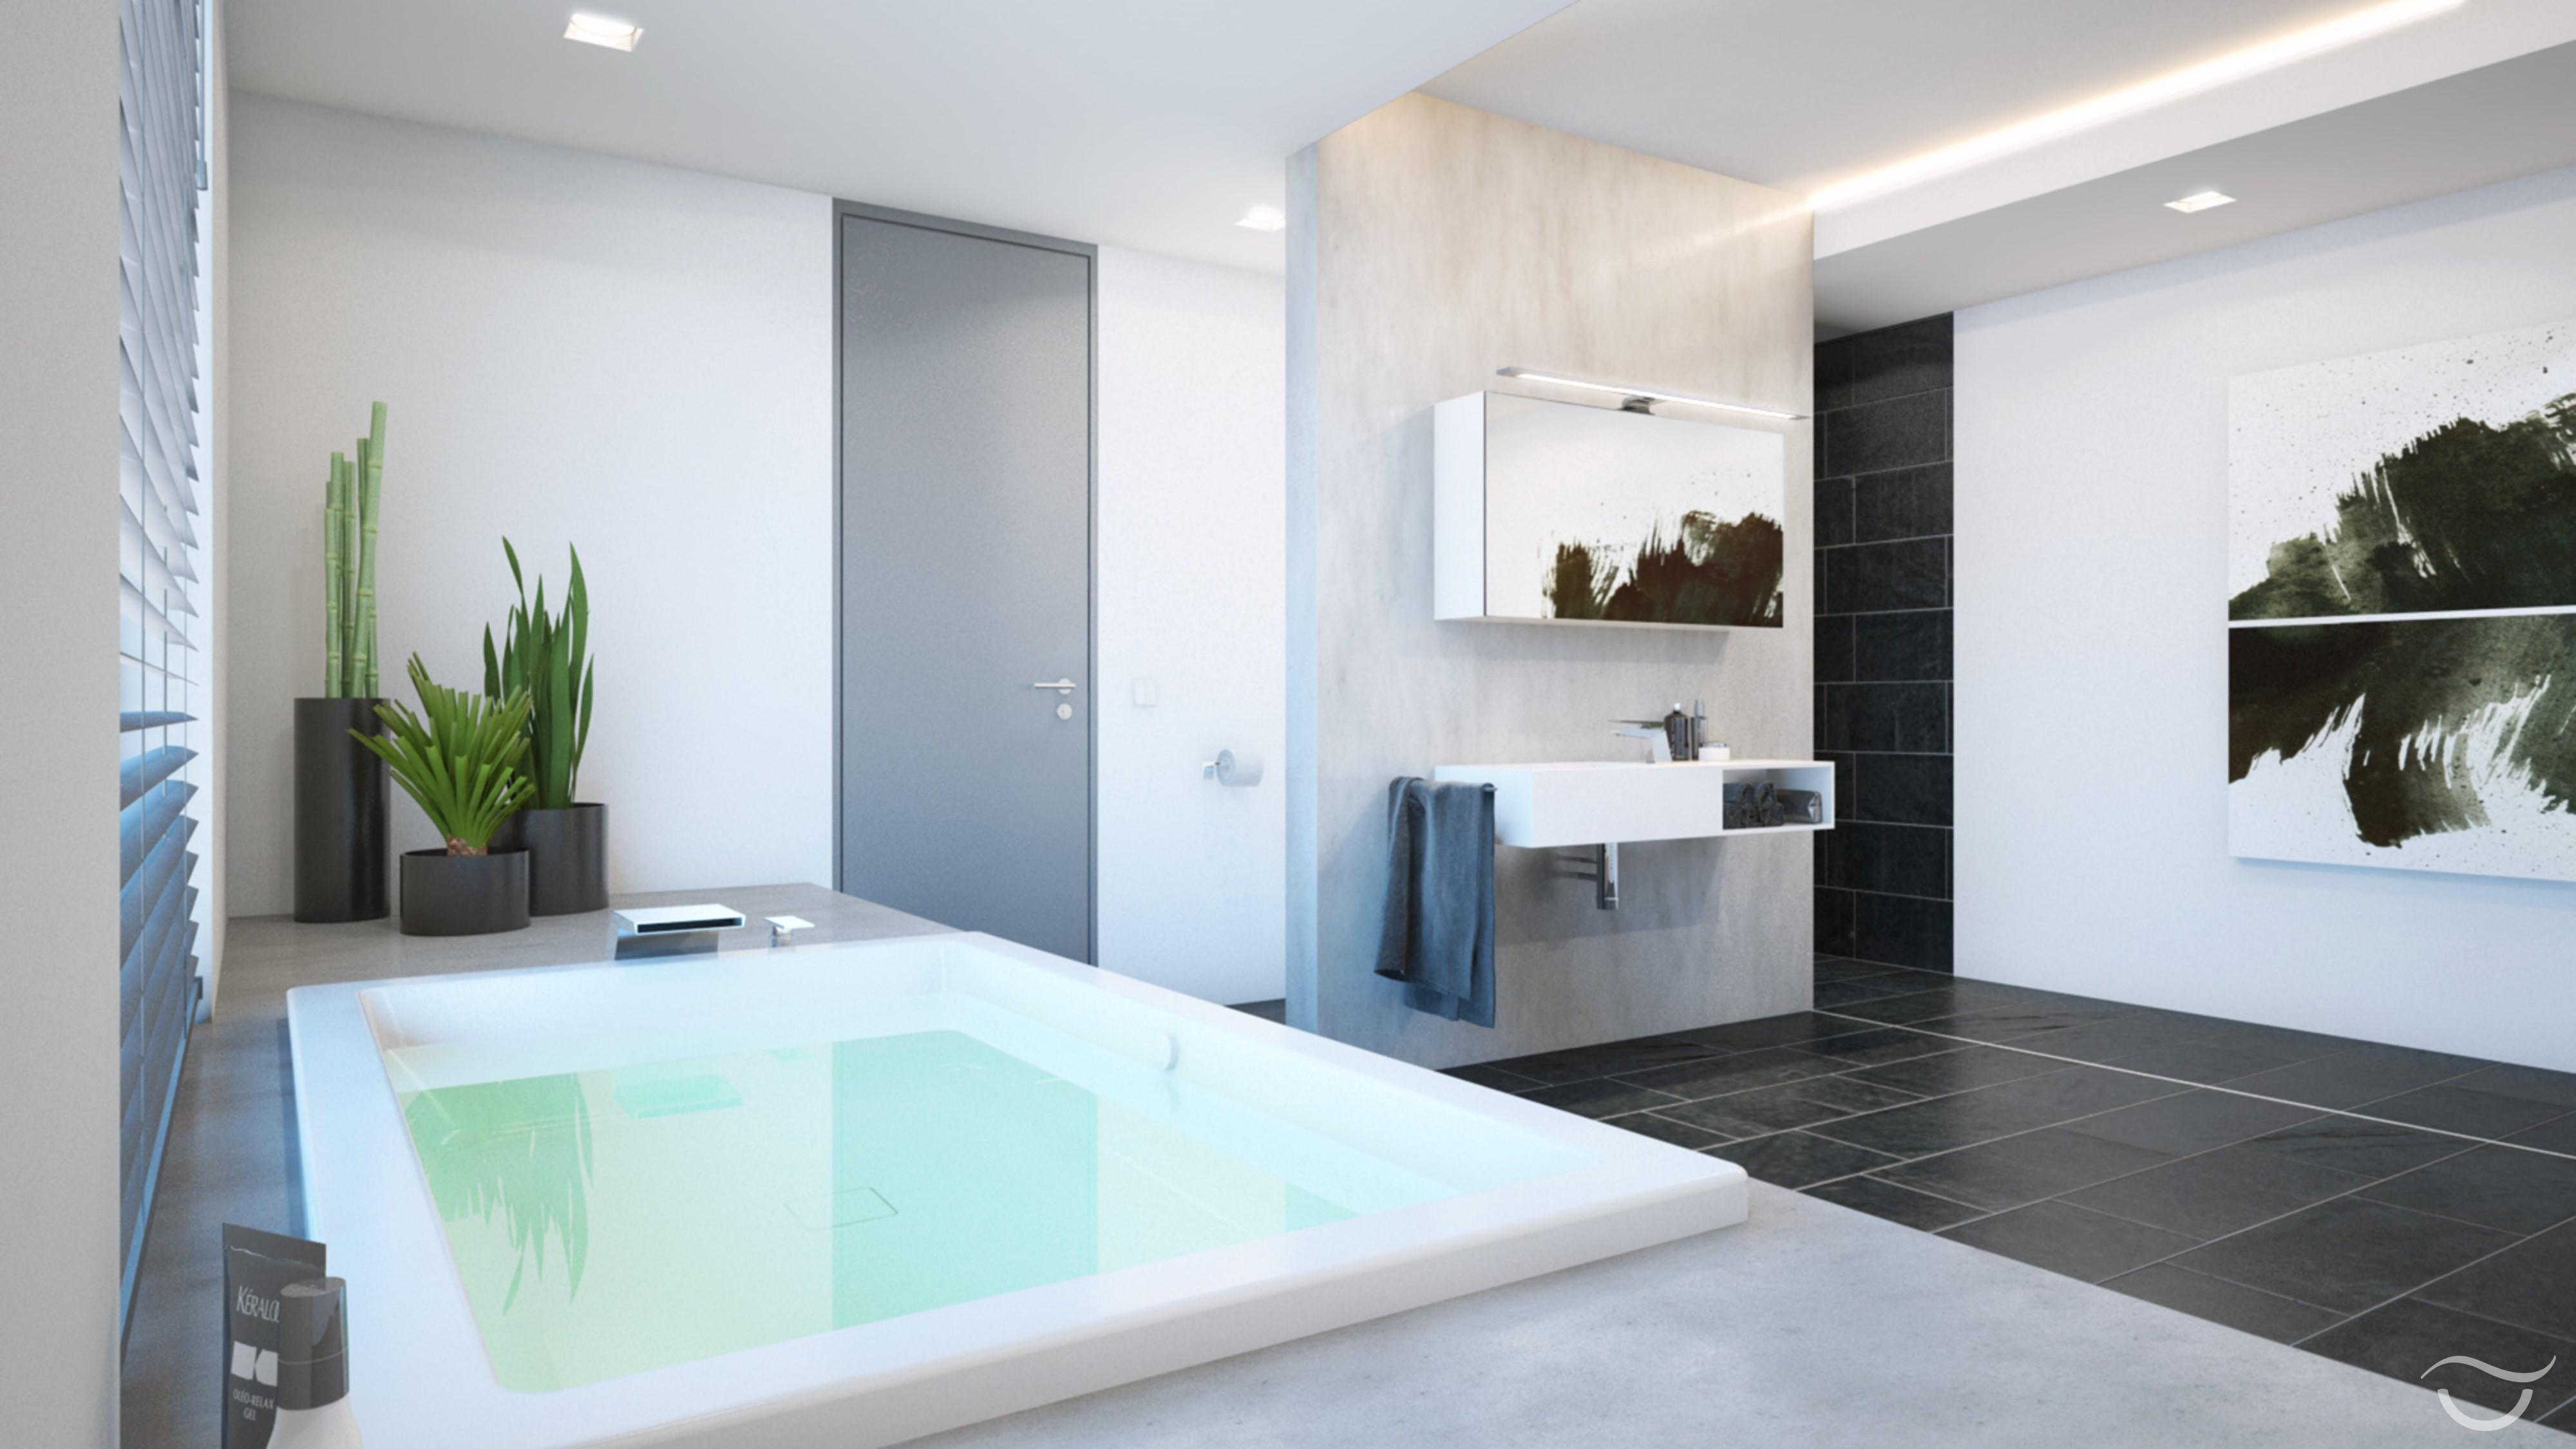 MANHATTAN überzeugt mit modernem, minimalistischem Design #badezimmer #minimalistisch ©Banovo GmbH